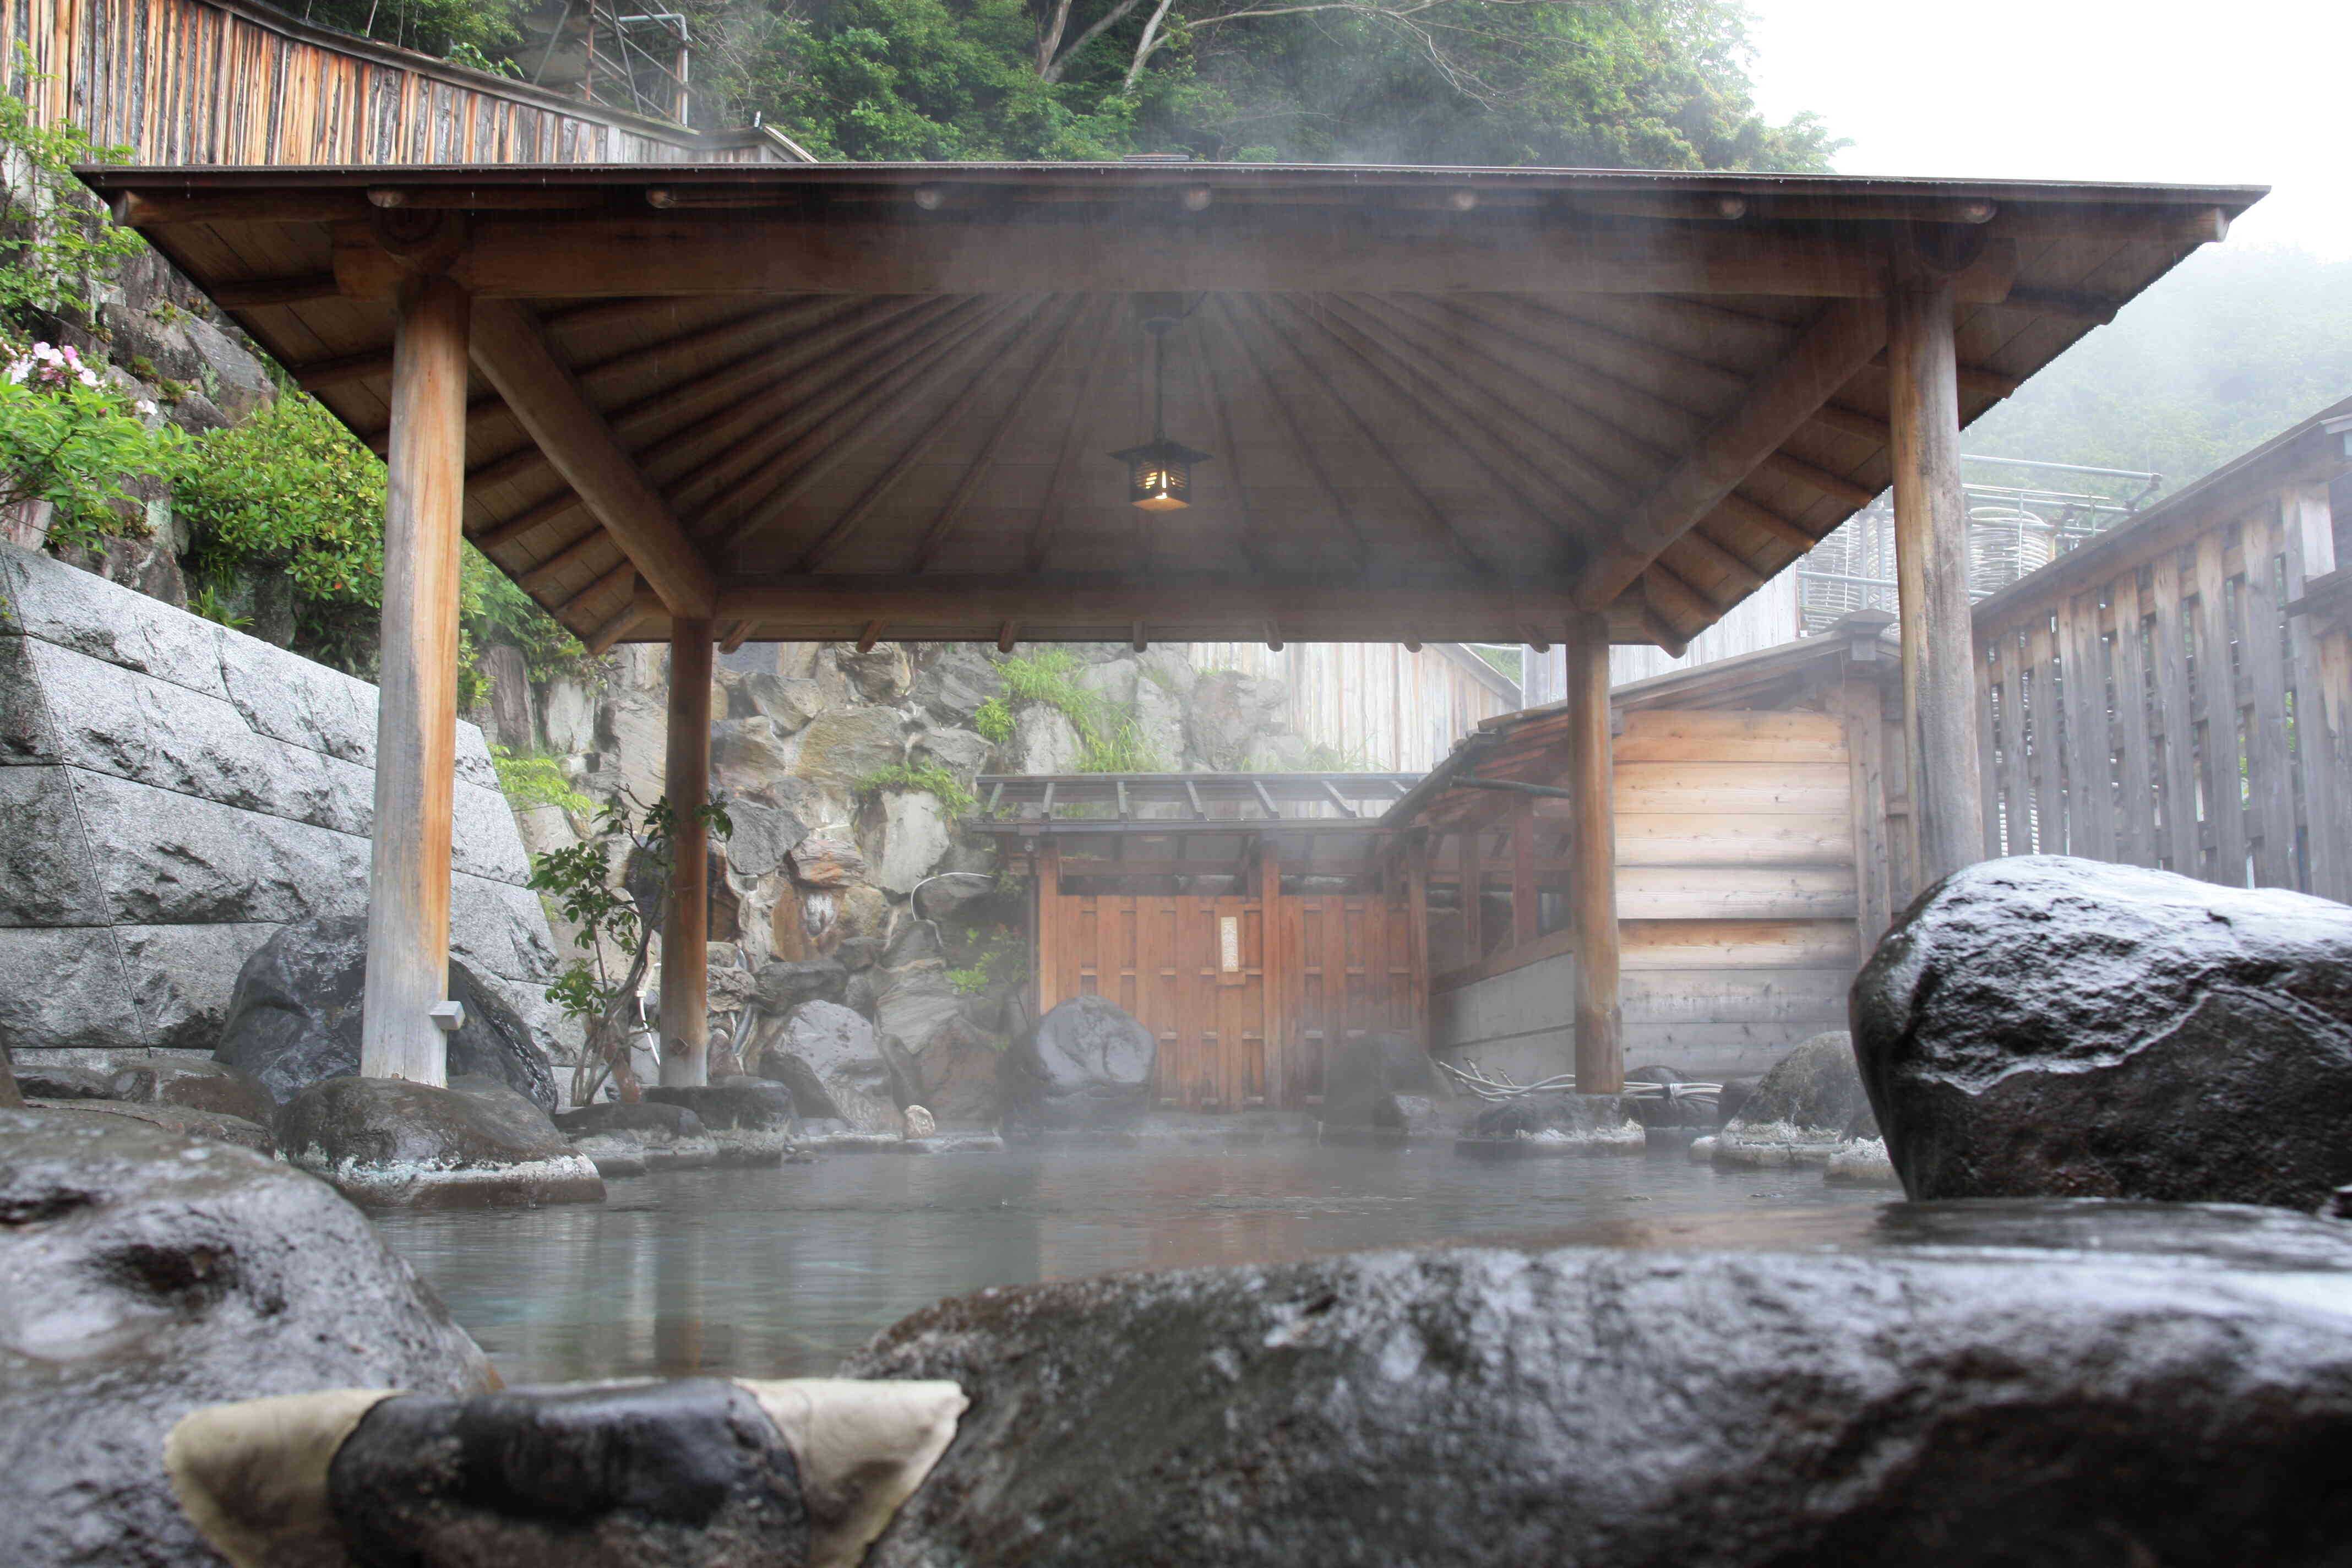 壮観の桜田温泉「大露天風呂」「広さ20帖」「深さ1メートル」の広く深く、泳げるほど大きな露天風呂を無料貸切でご満喫ください。